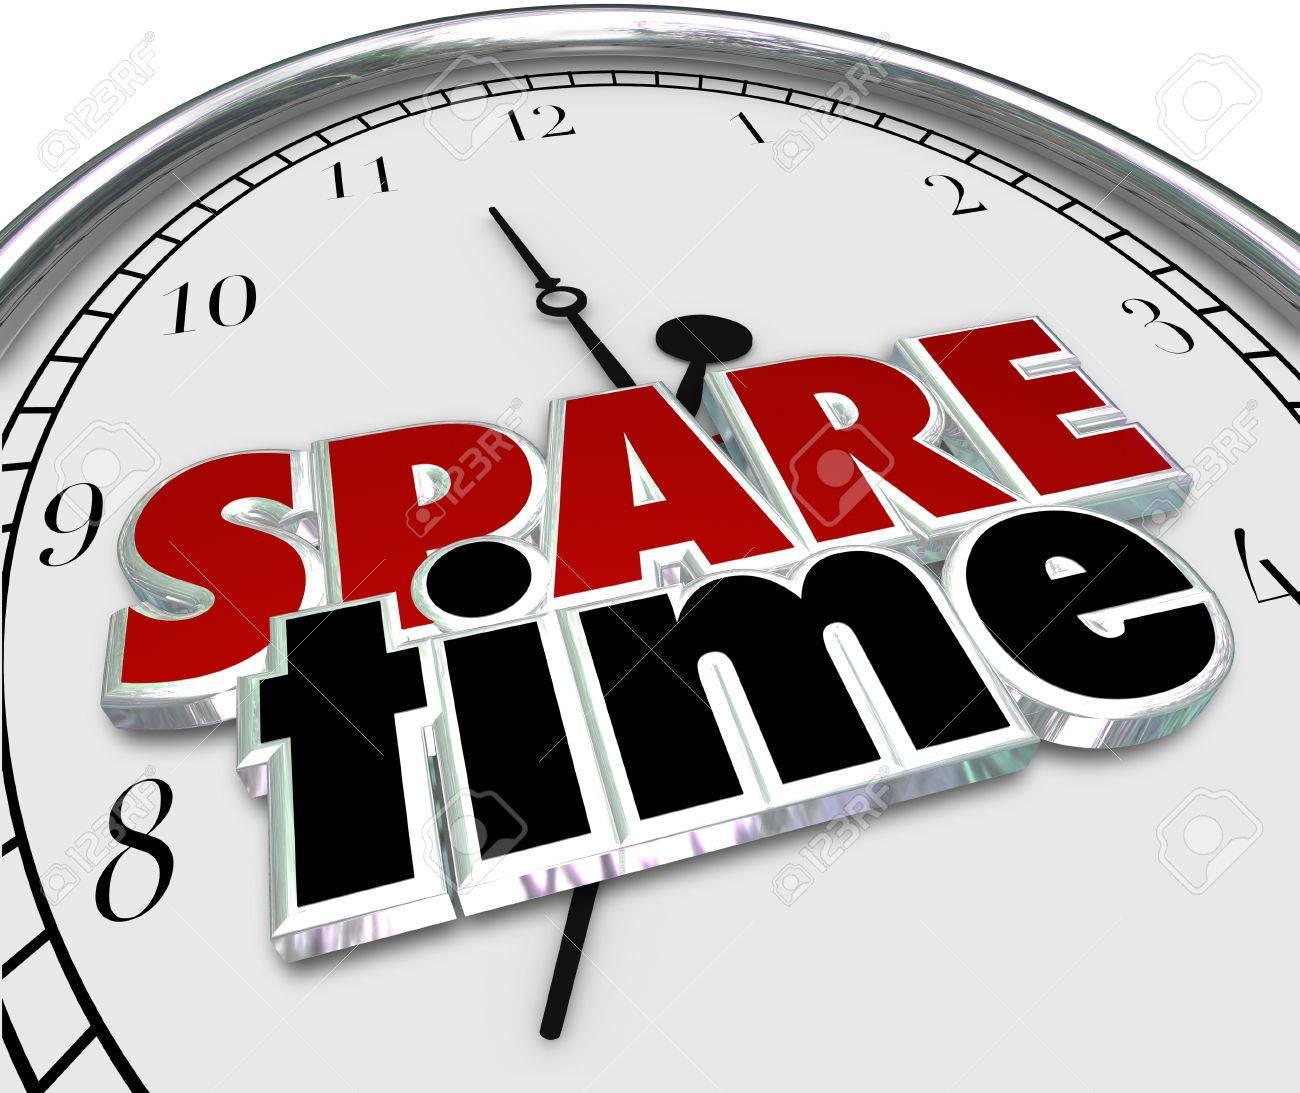 Spare Time là gì và cấu trúc cụm từ Spare Time trong câu Tiếng Anh